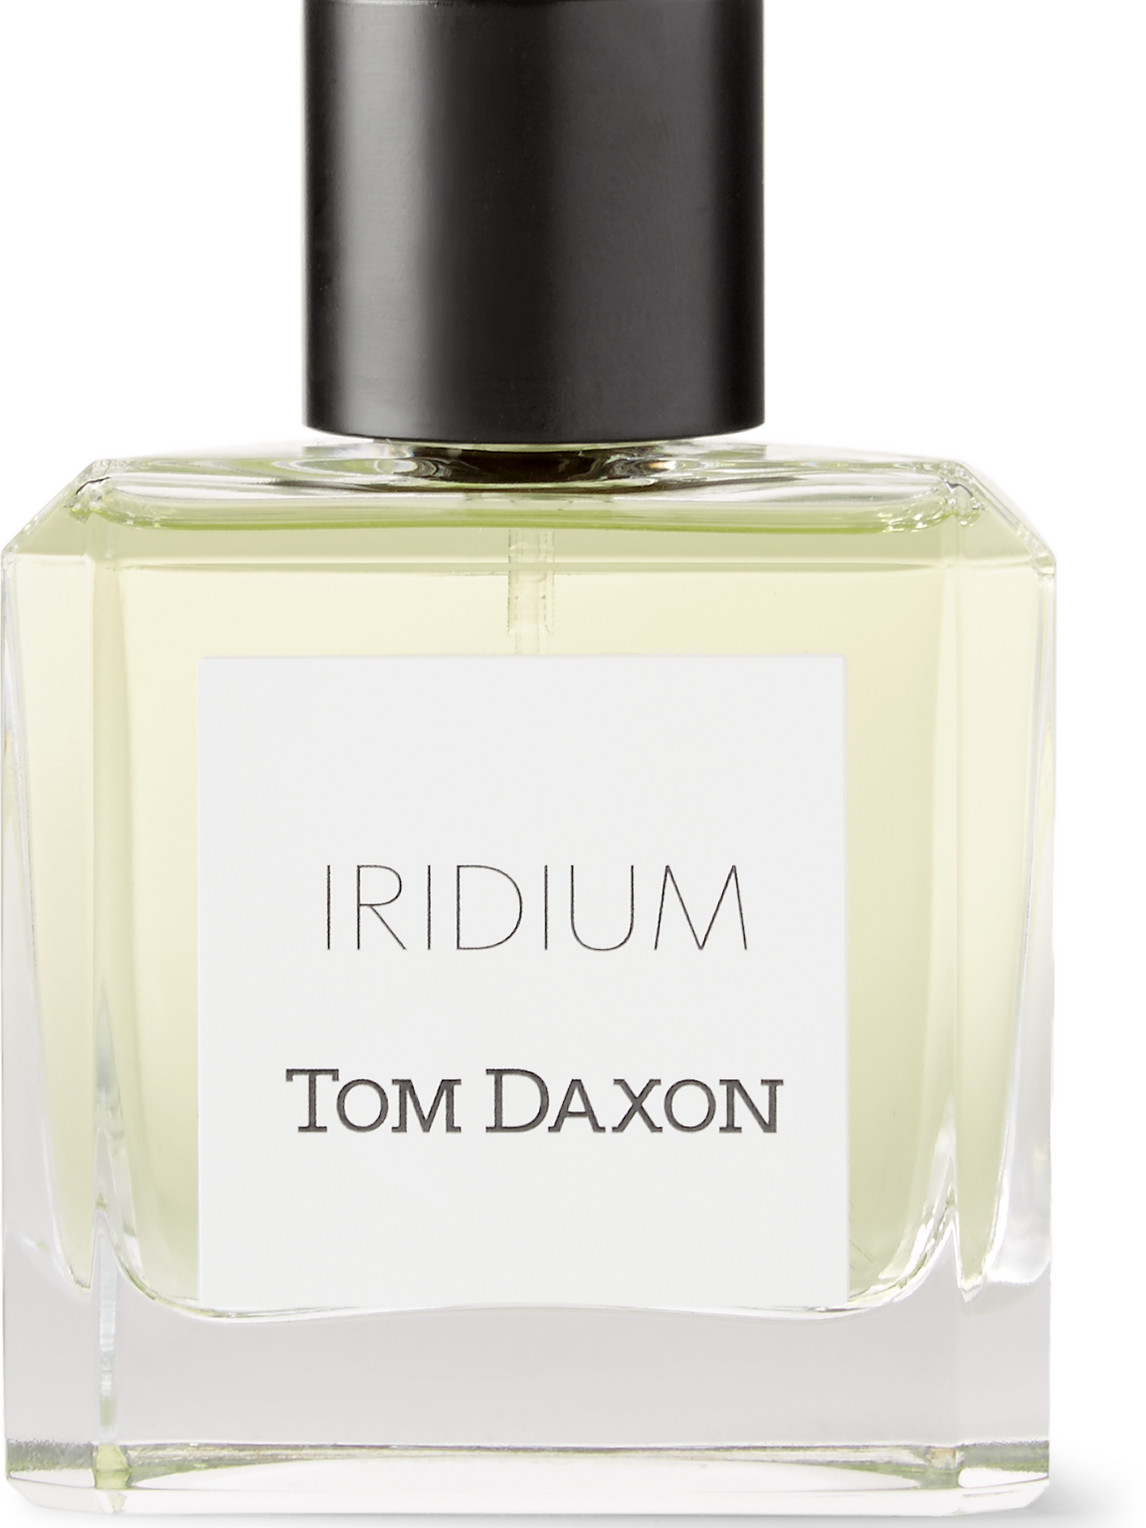 Tom Daxon Iridium Eau De Parfum In Colourless